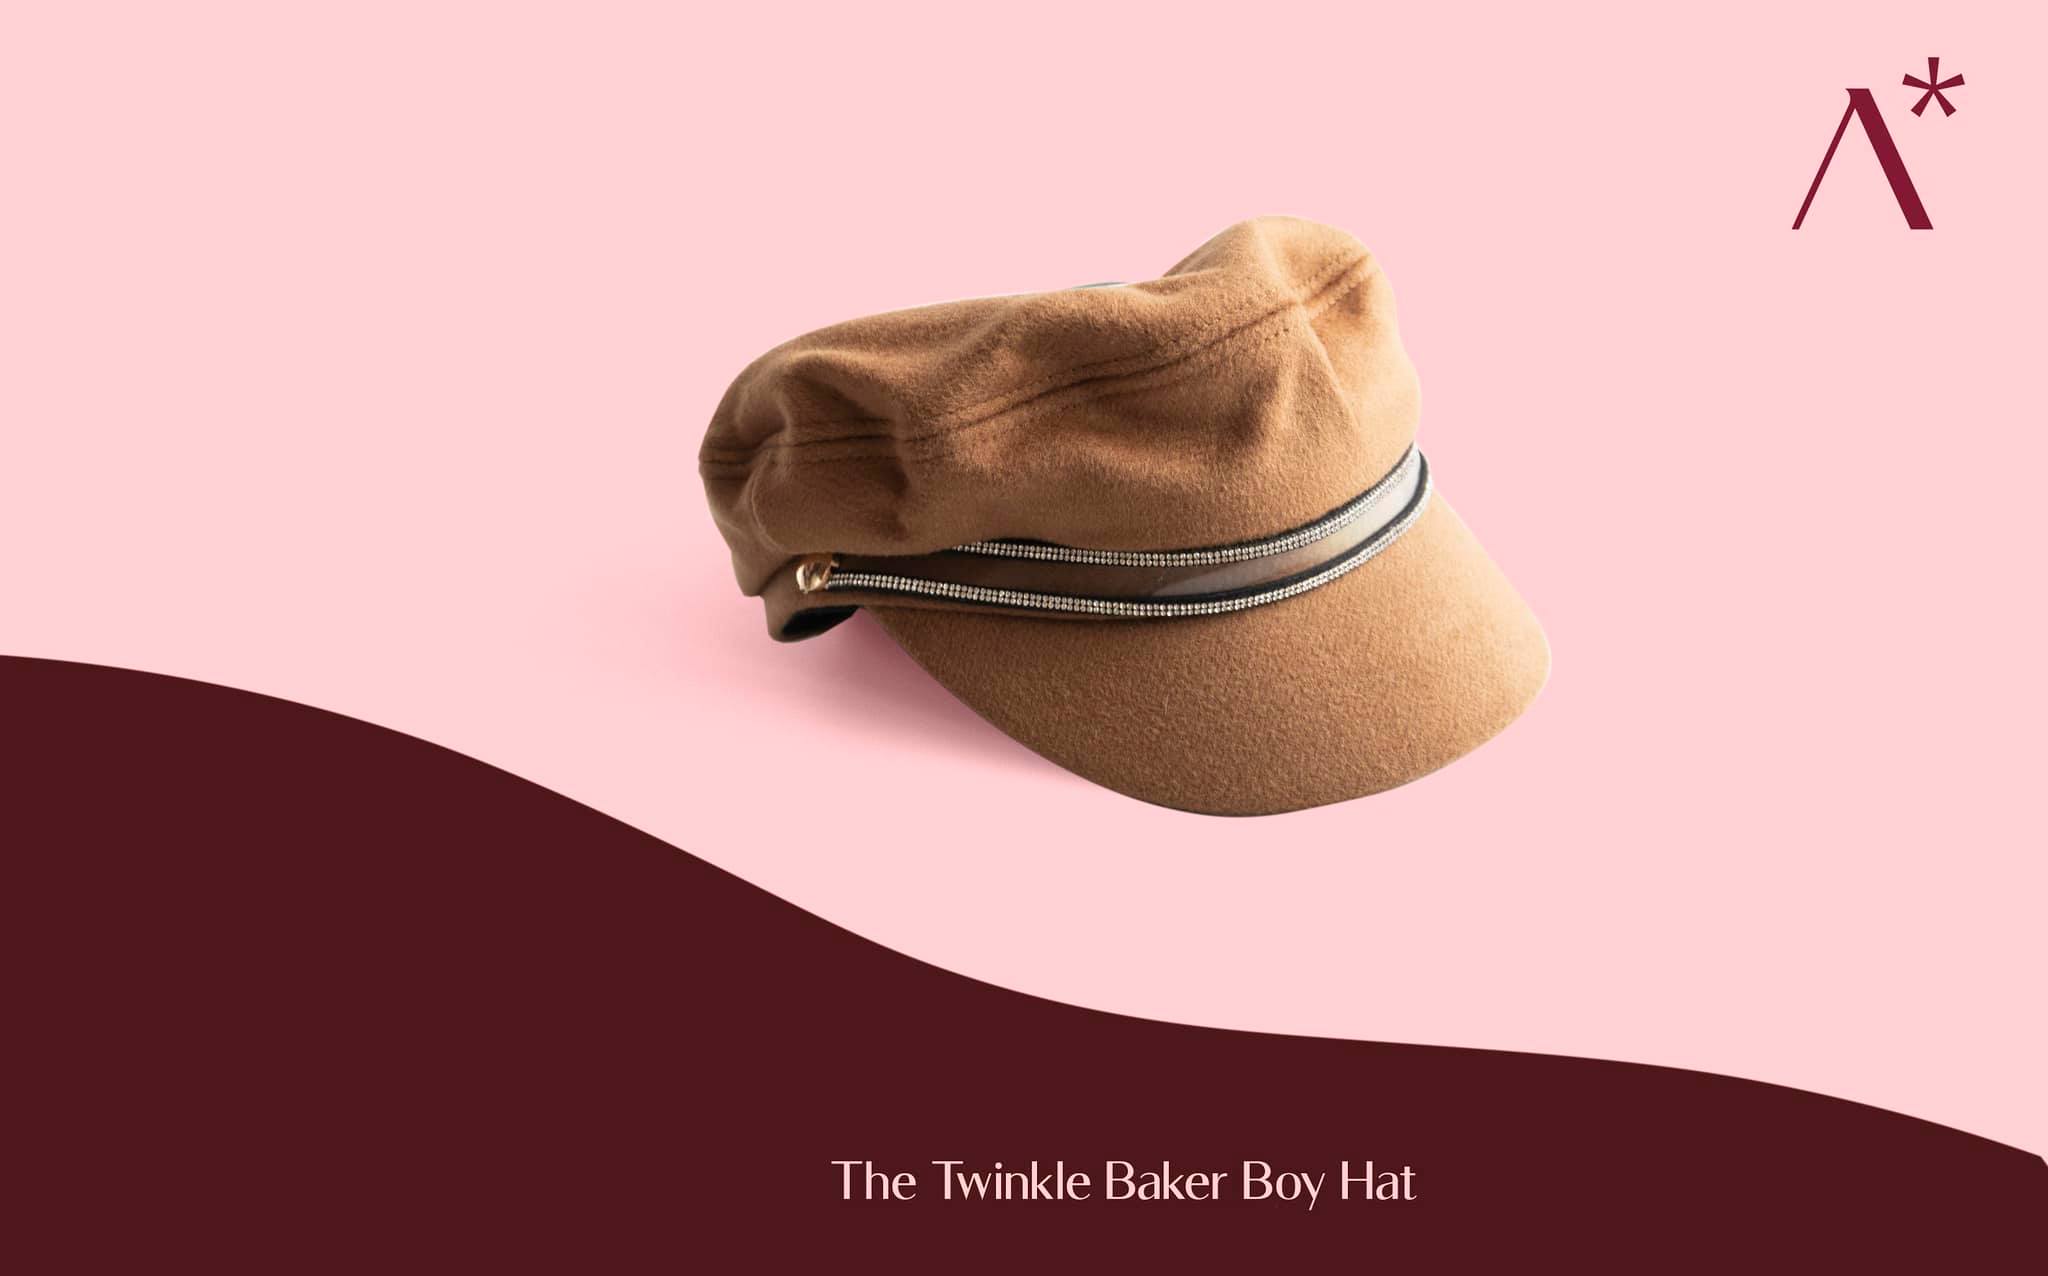 The Twinkle Baker Boy Hat